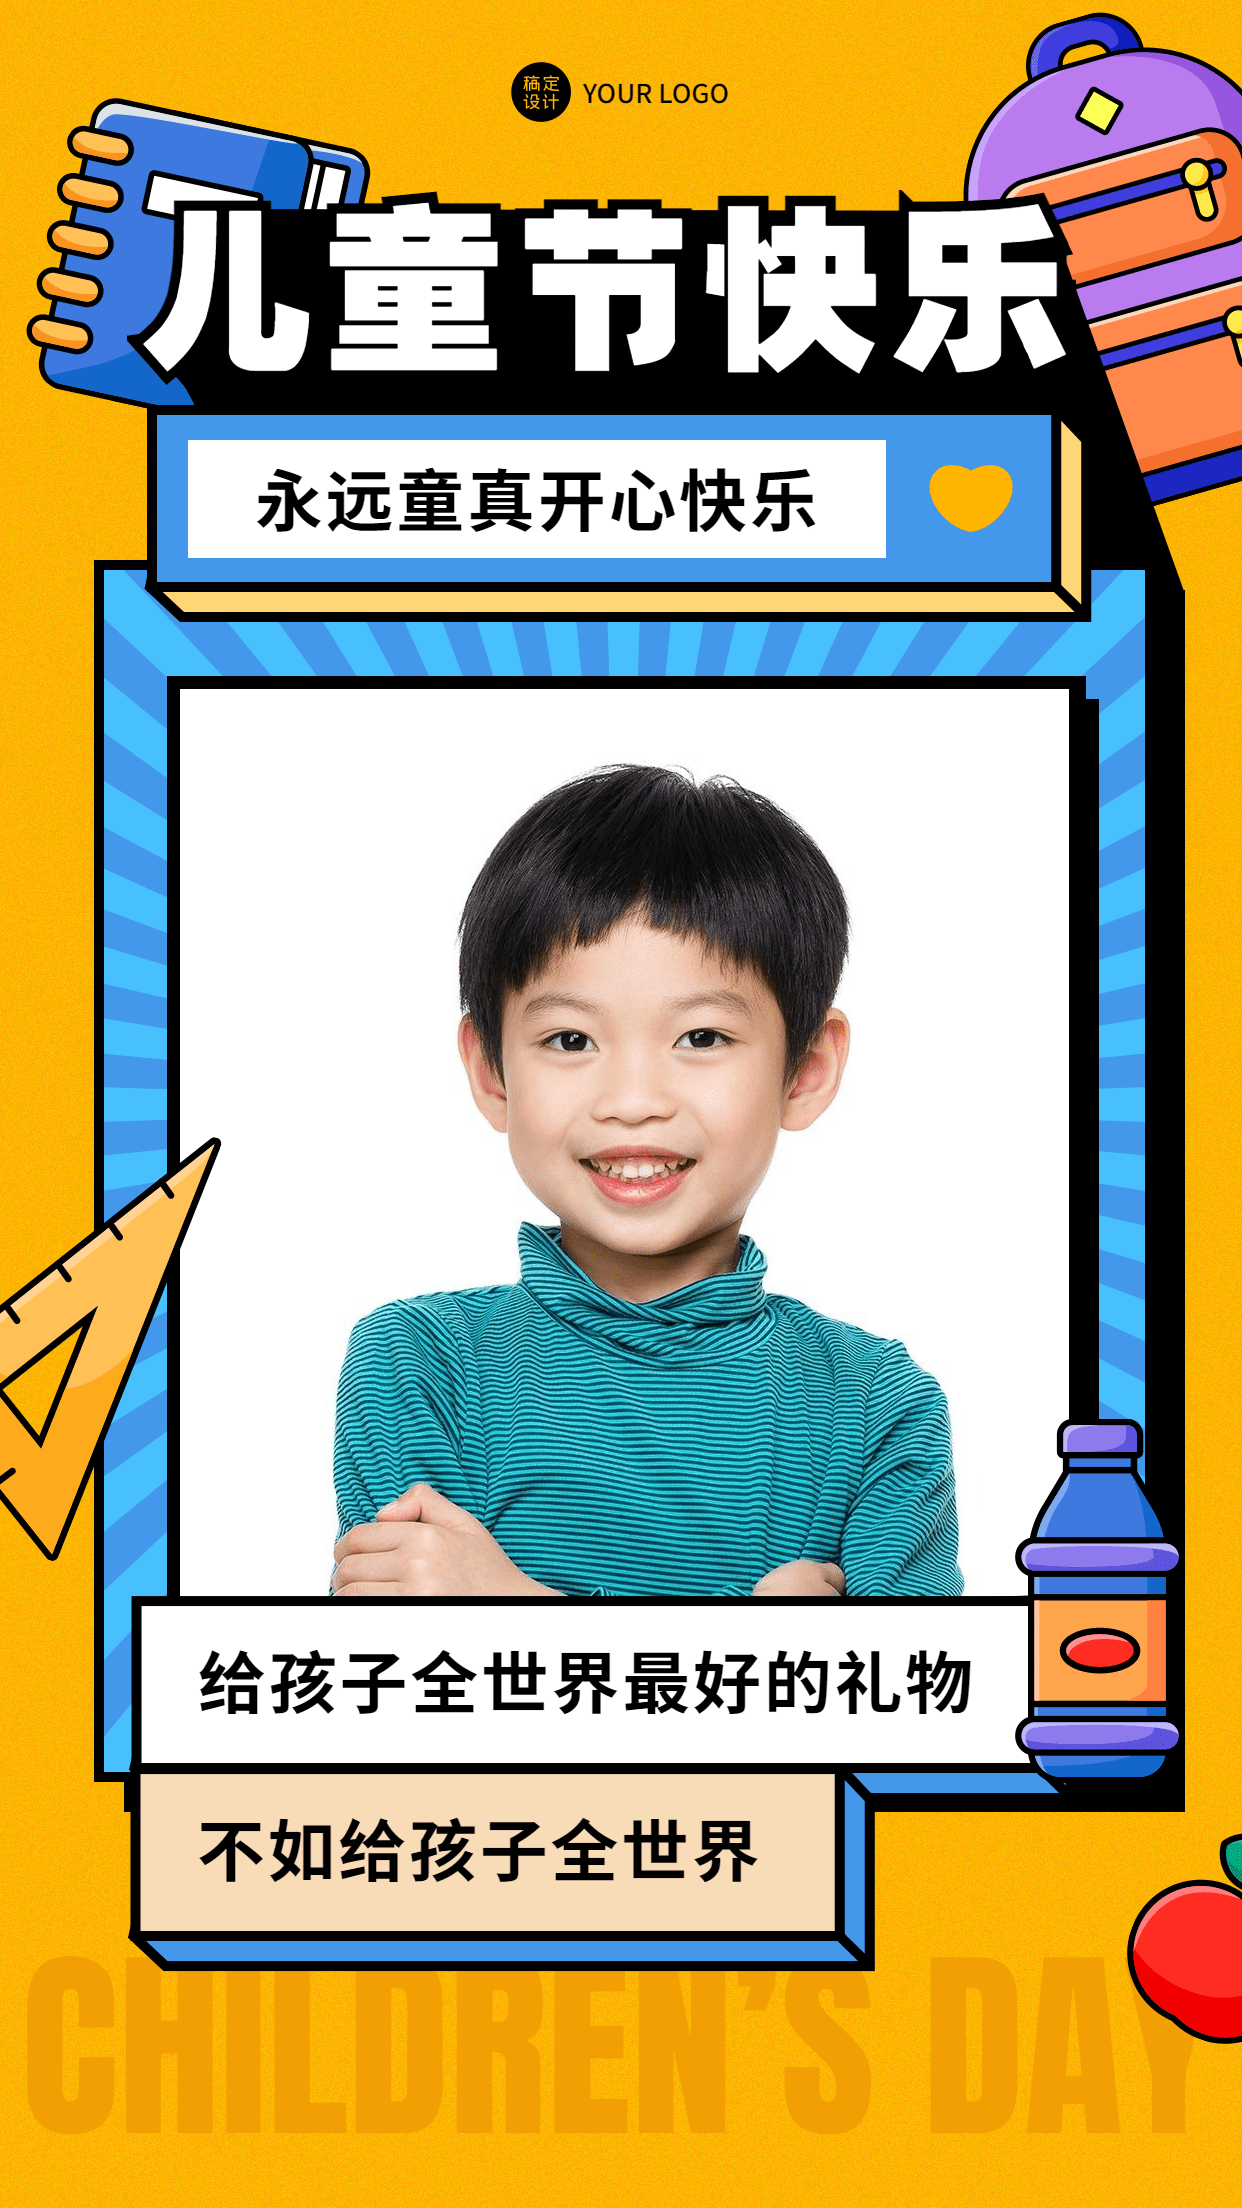 61儿童节节日祝福晒图晒照卡通手机海报预览效果